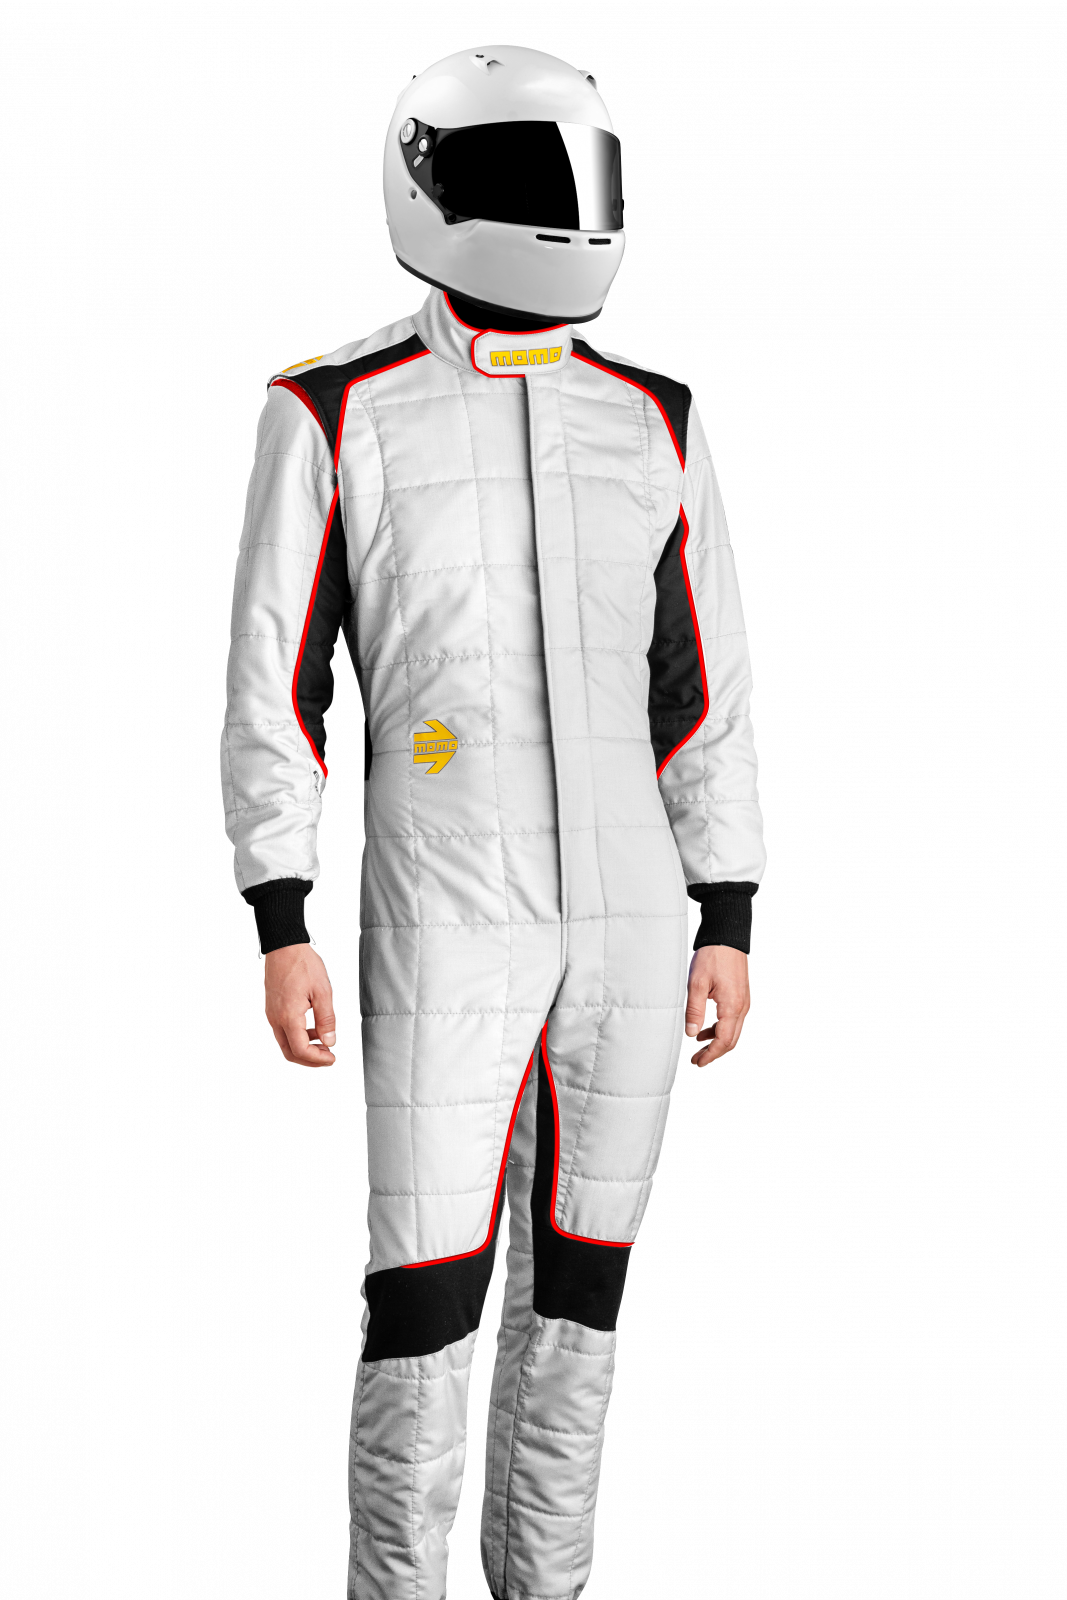 MOMO Corsa Evo White Size 60 Racing Suit TUCOEVOWHT60